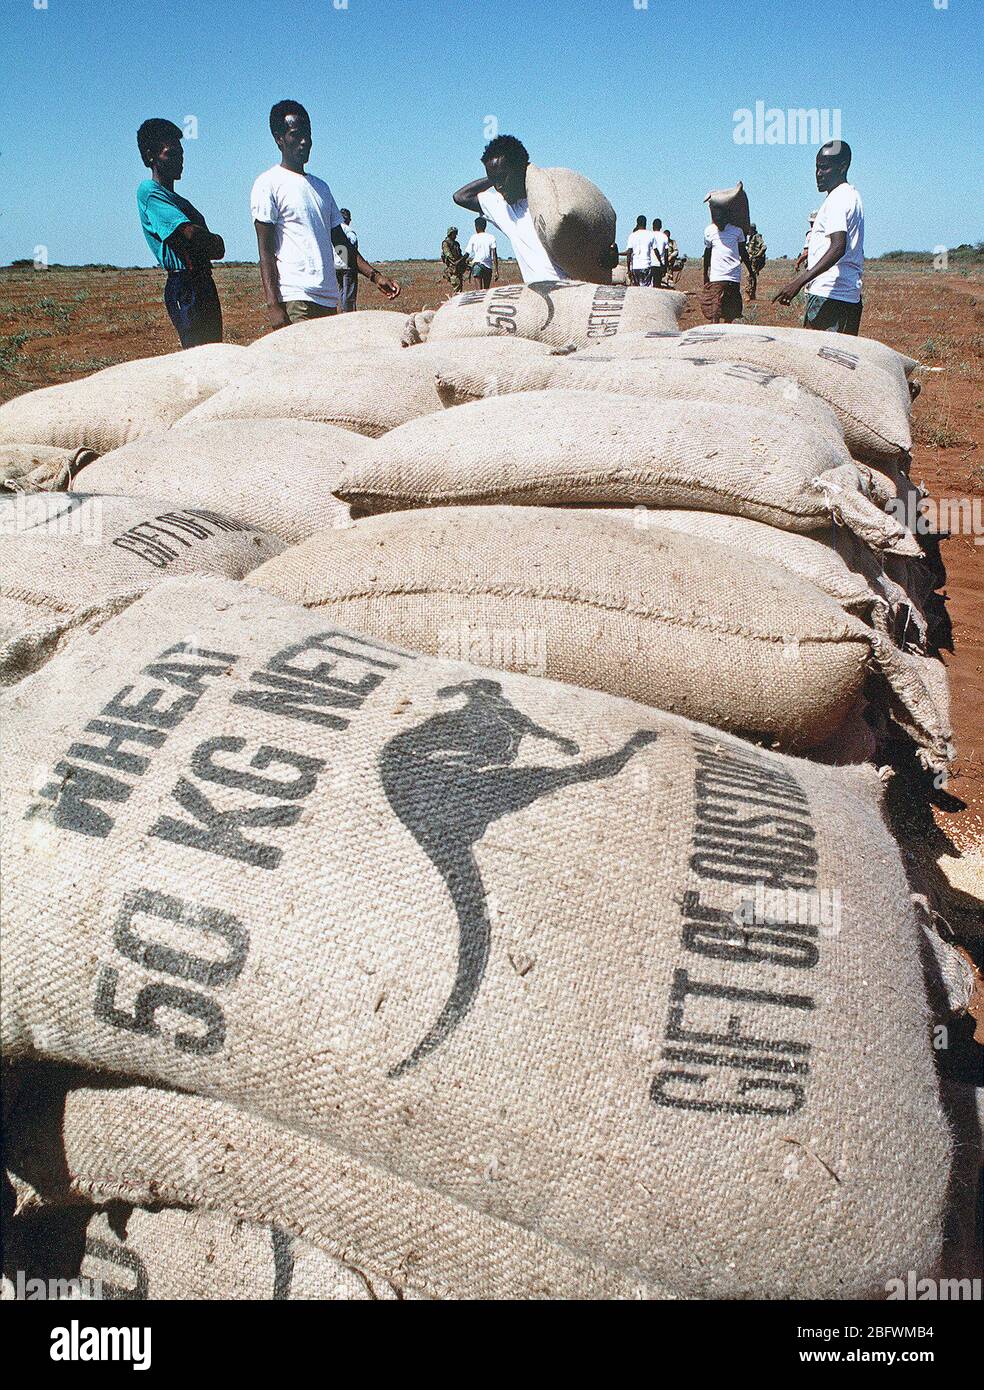 1993 - hombres de la aldea de Somalia Maleel apilar sacos de trigo entregadas por Marina 363 escuadrón de helicópteros pesados (HMH-363) durante el esfuerzo de socorro multinacional Restore Hope. Foto de stock